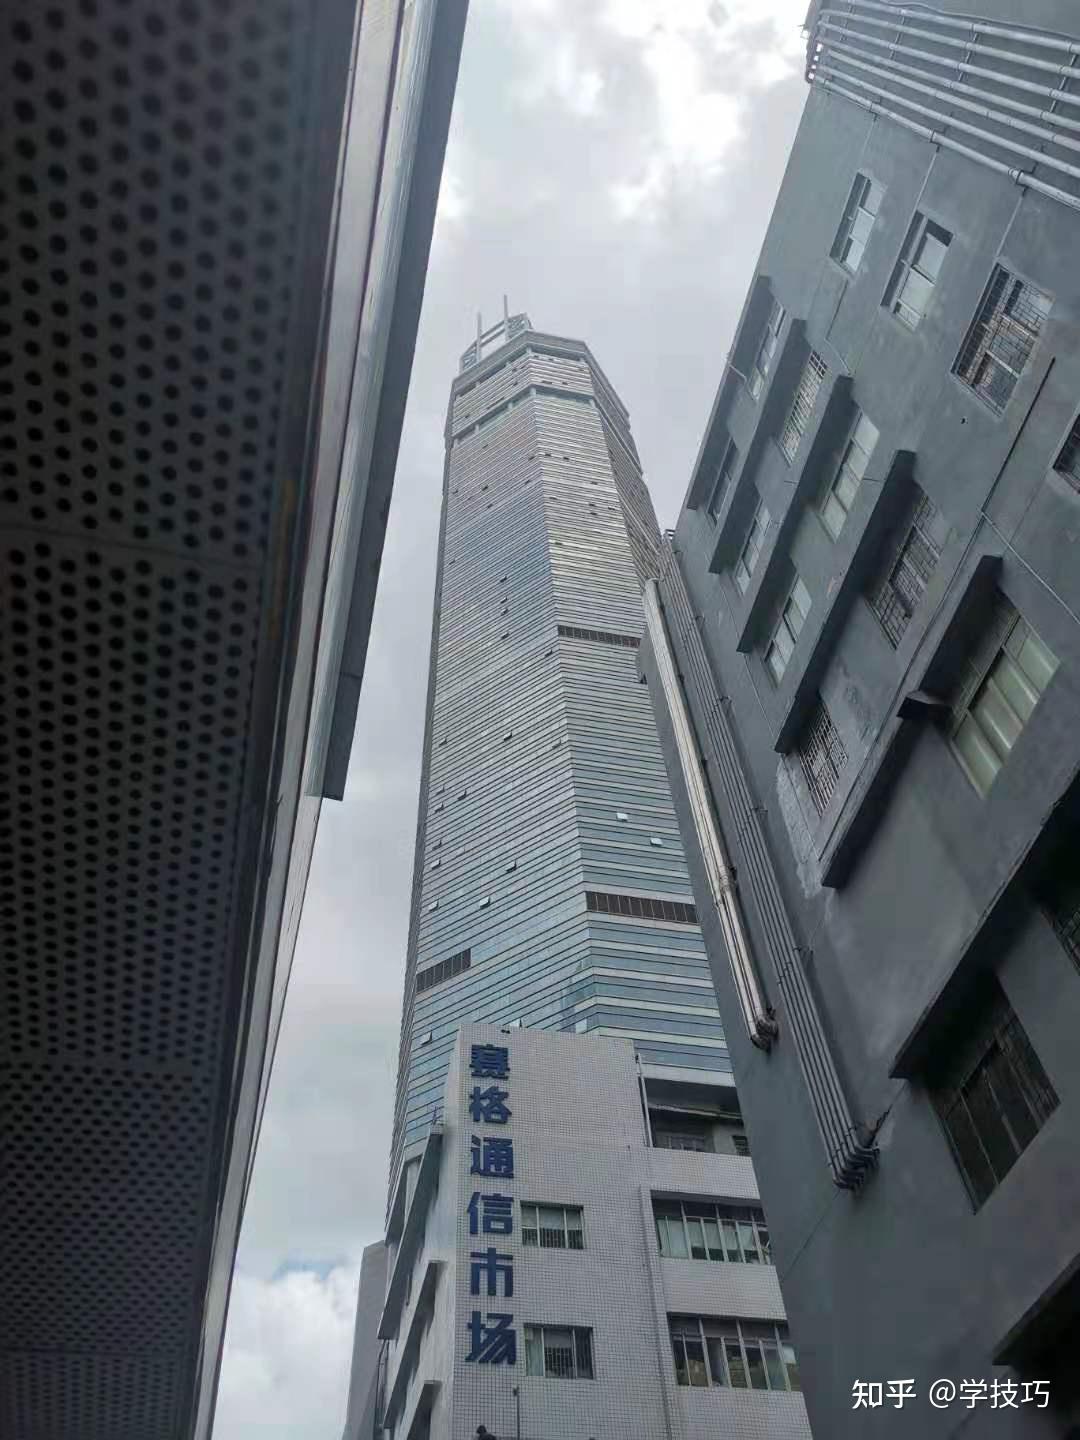 518日中午深圳赛格广场大楼晃动有哪些方面需要我们注意到的